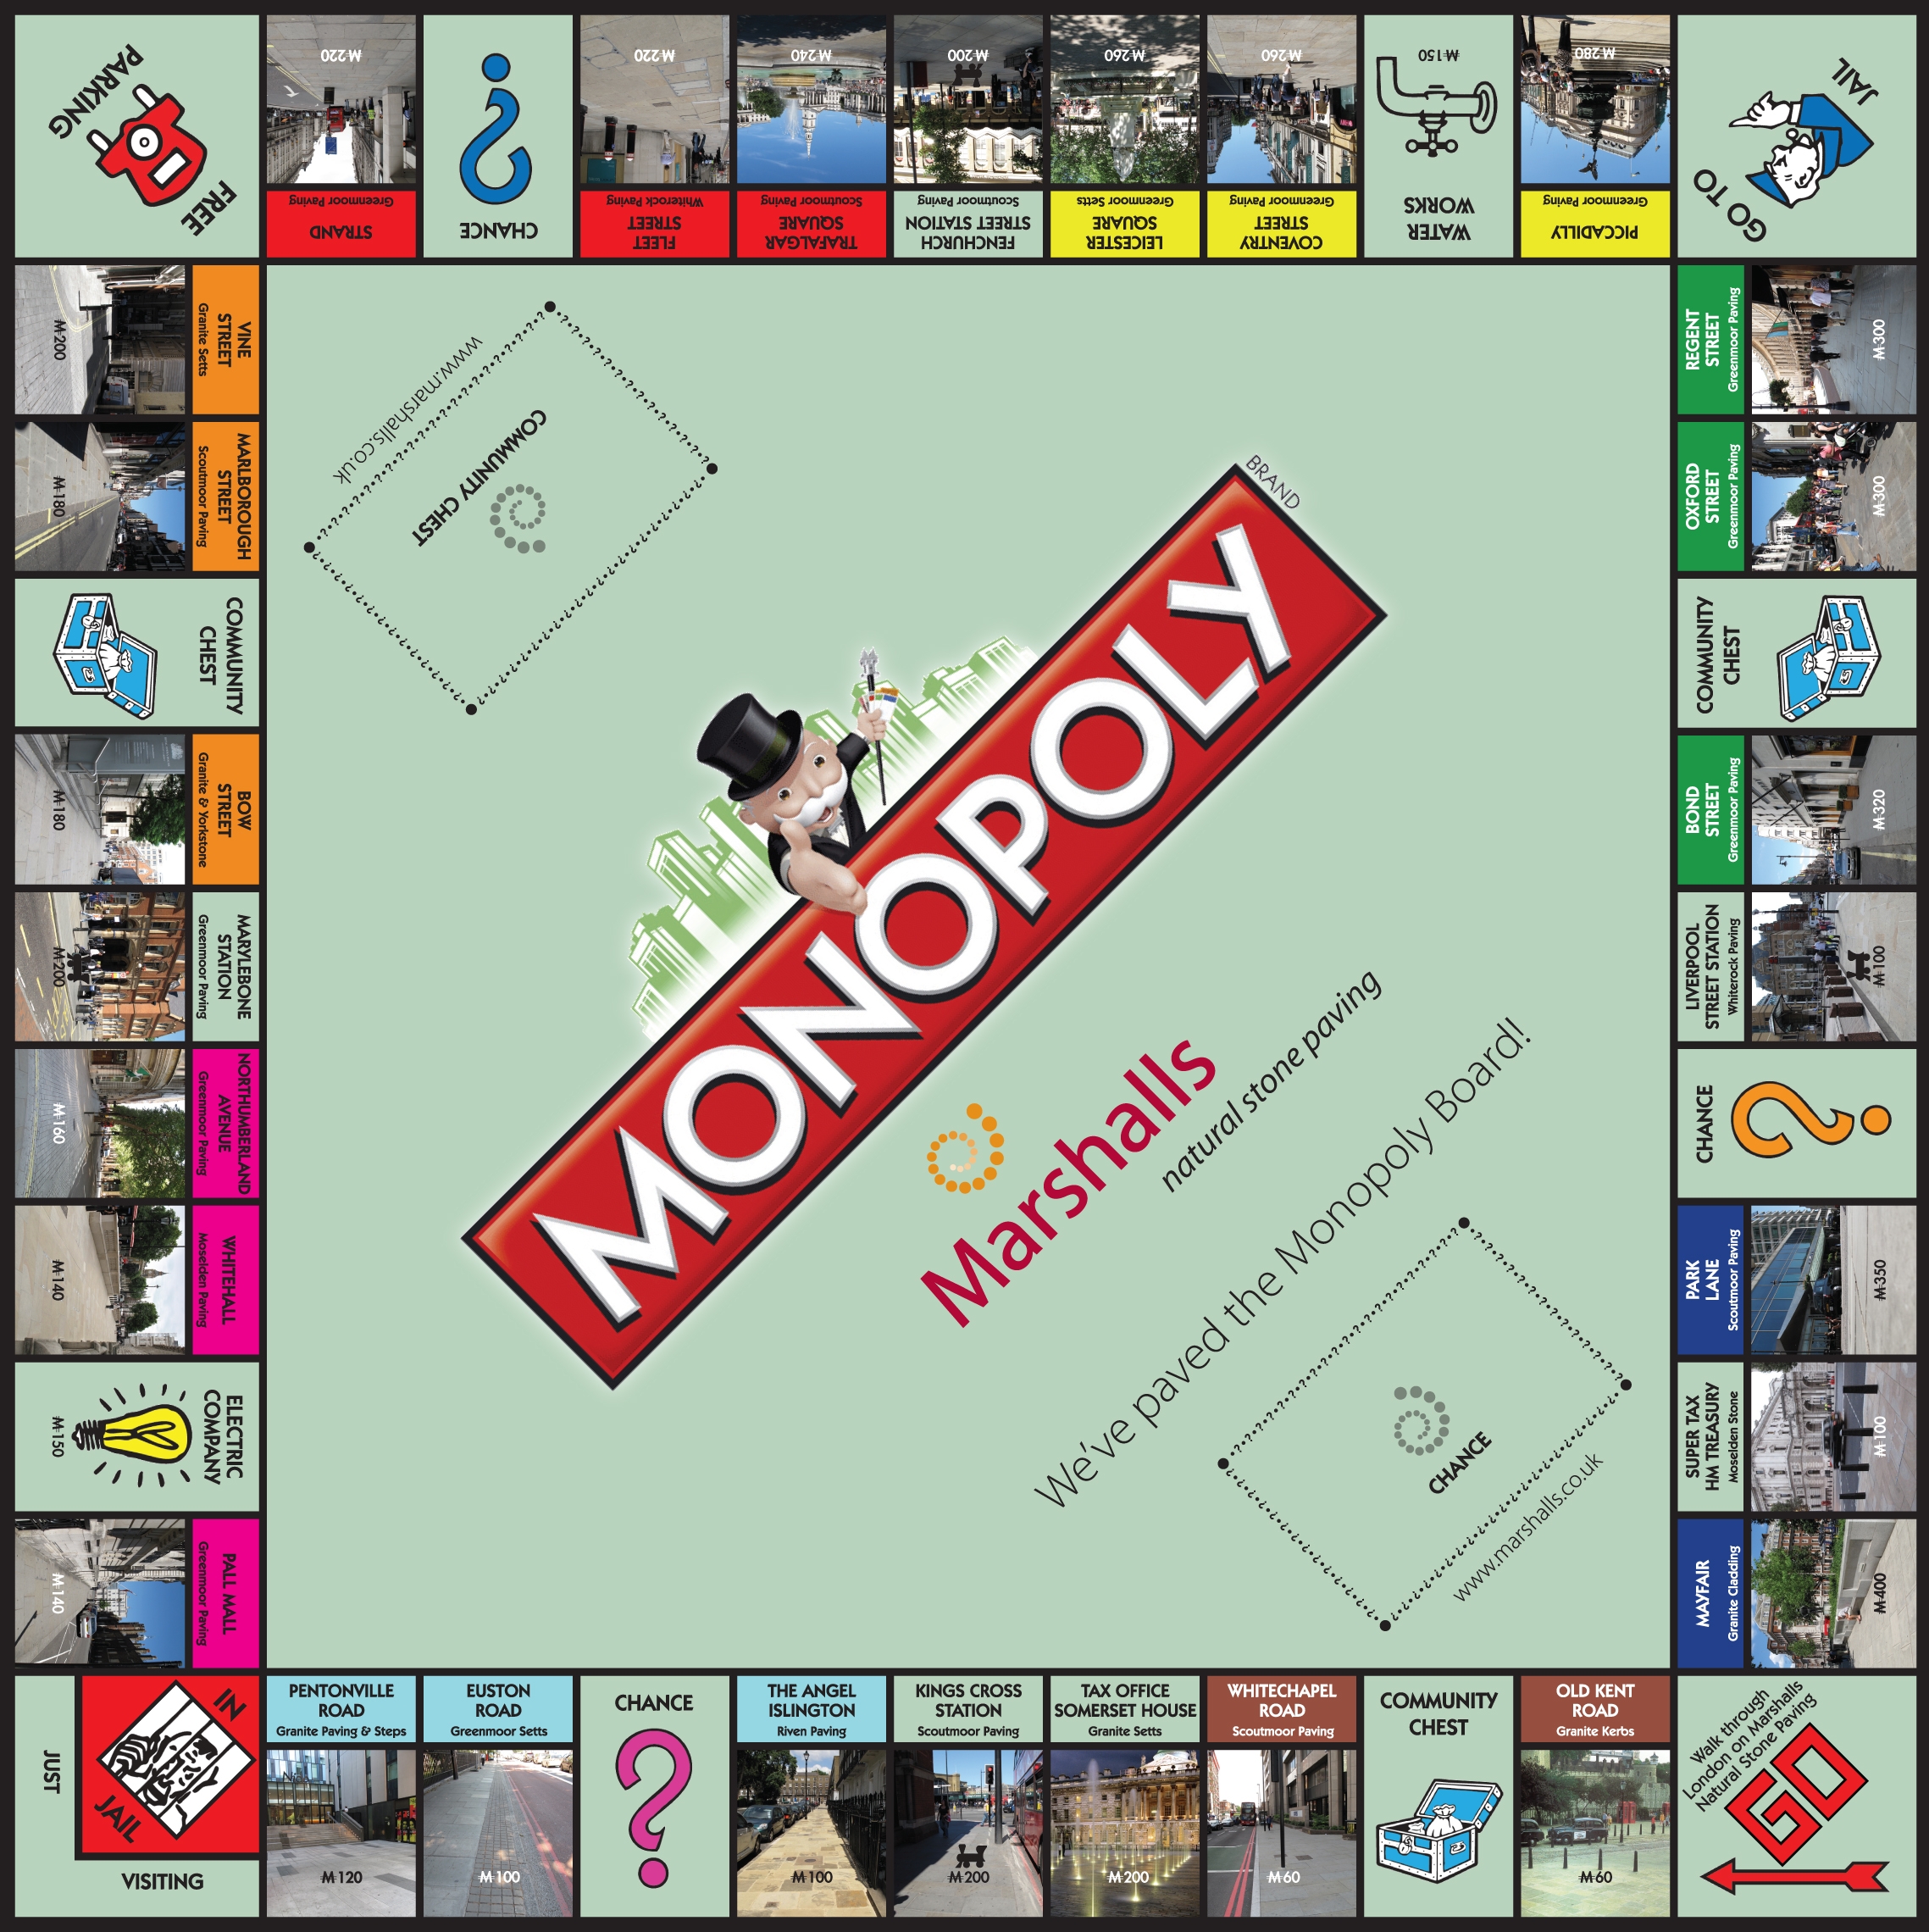 marshalls_monopoly_fullsize.jpg